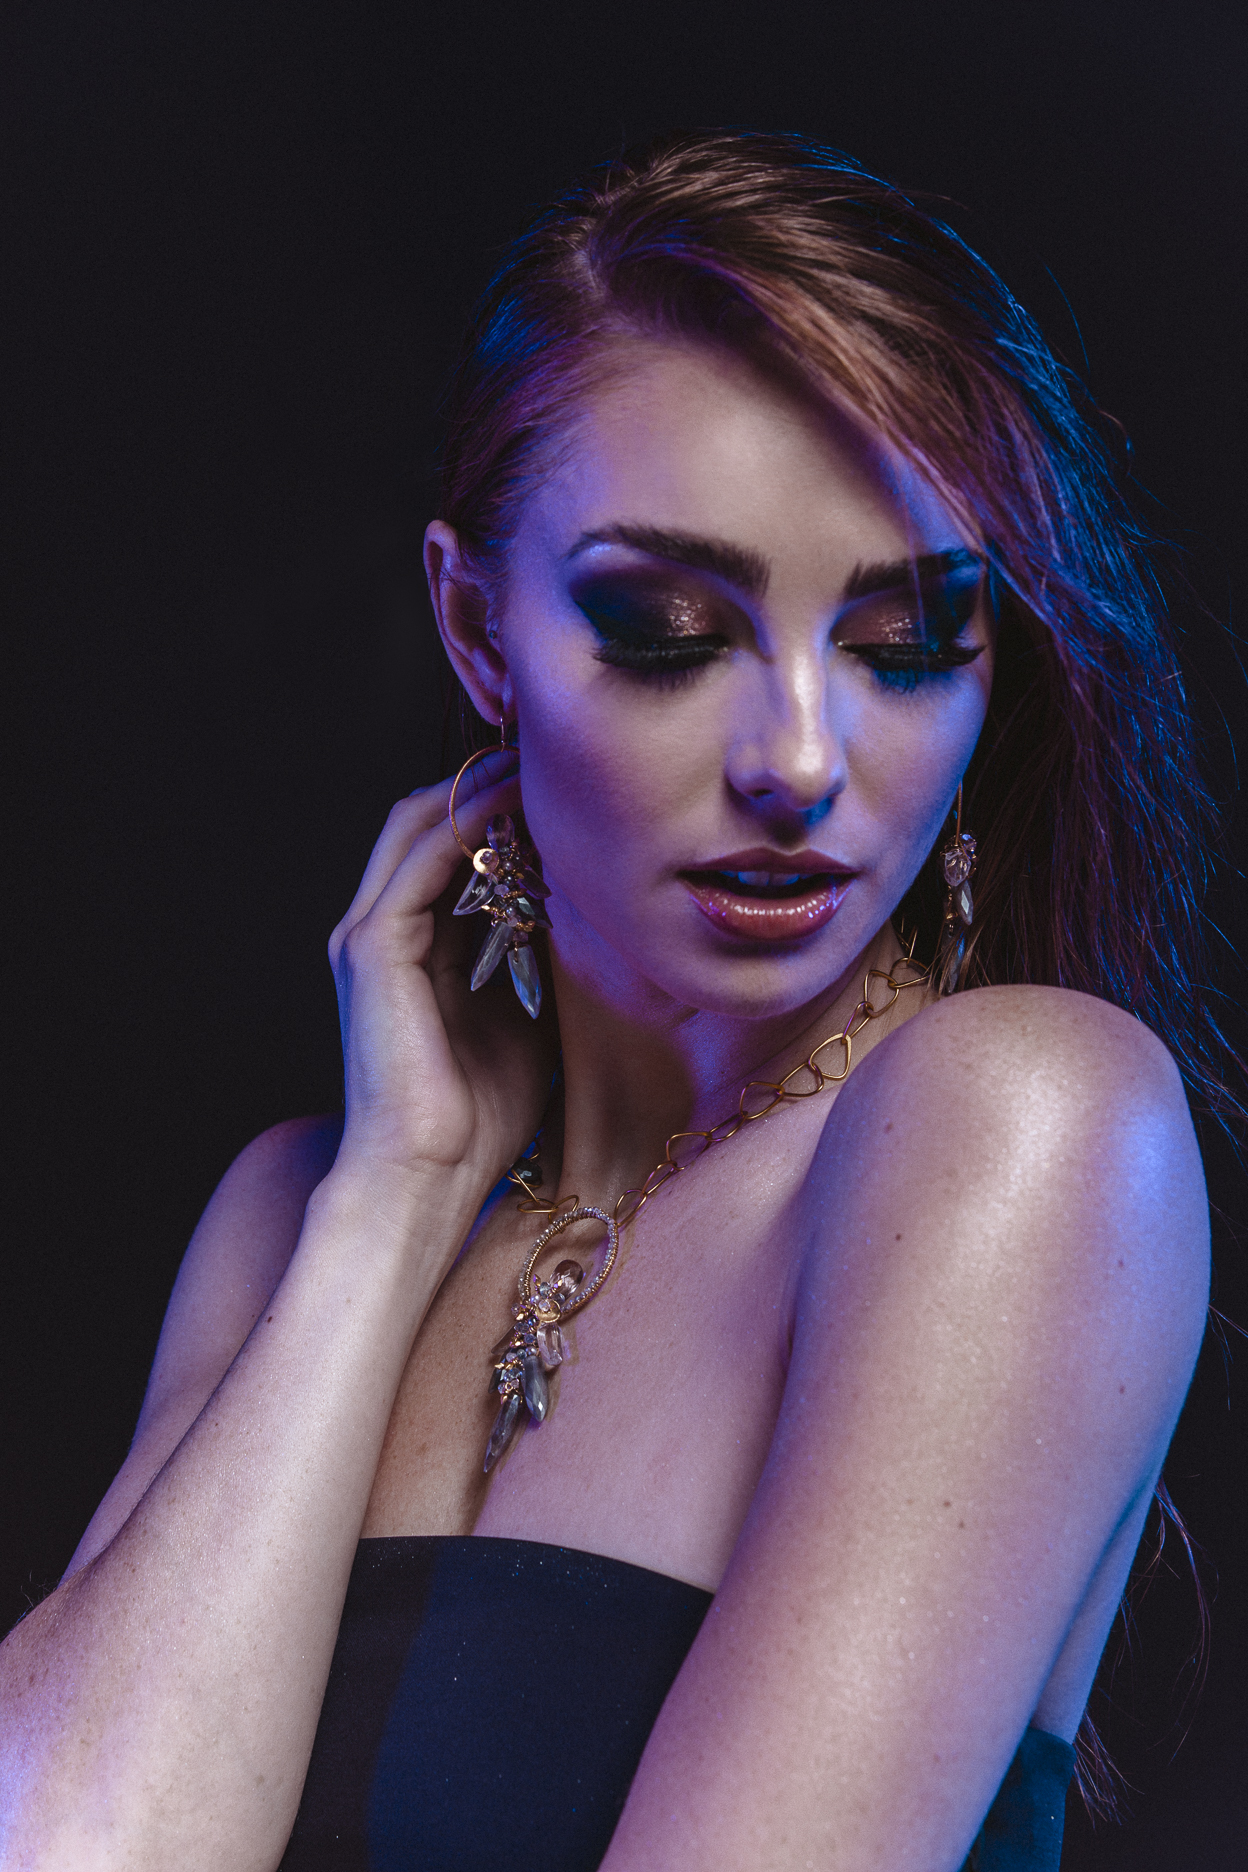 model wearing gemstone hoop earrings